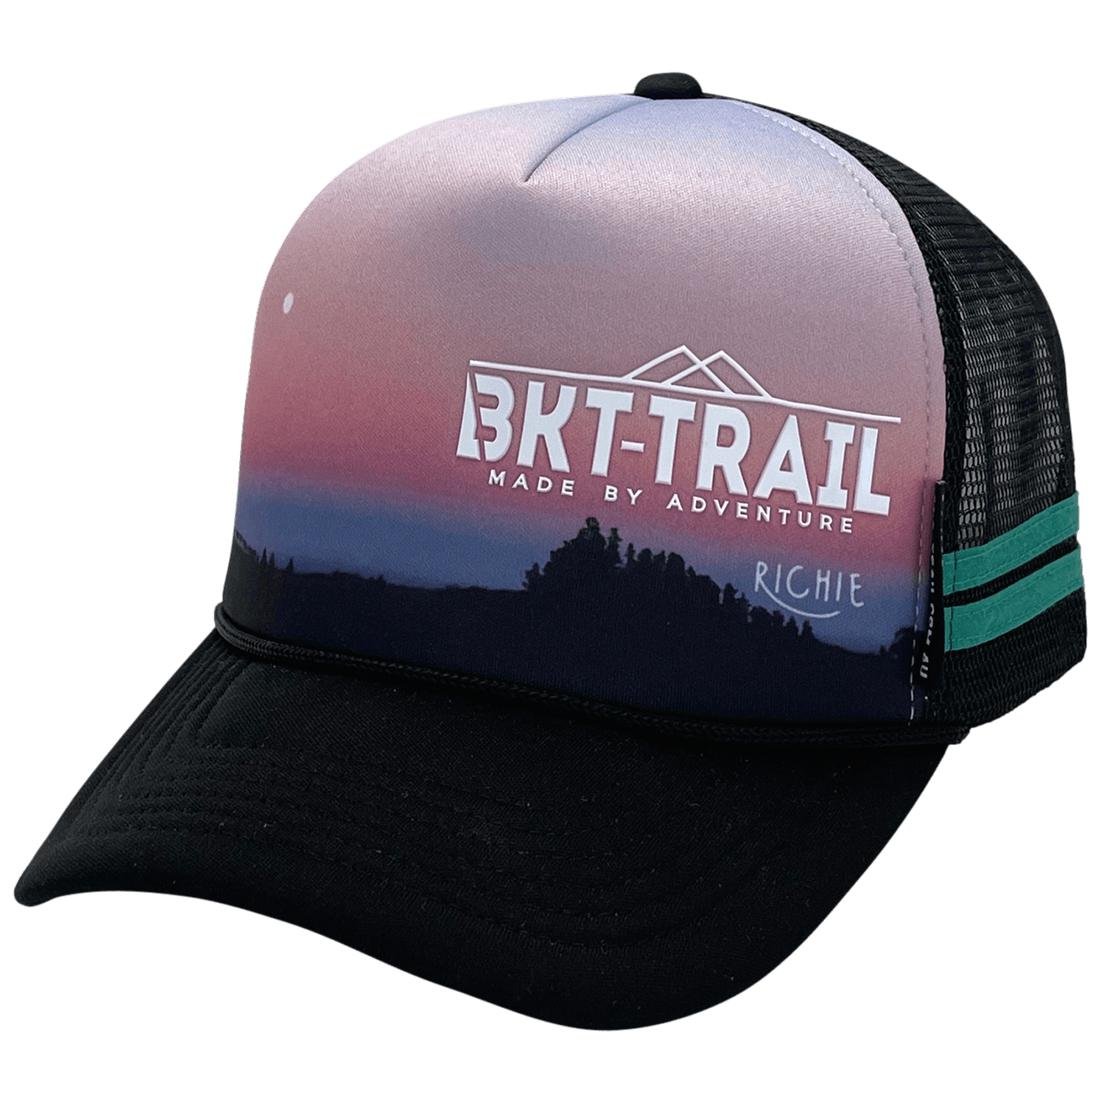 BKT Trail Custom Foamie Trucker Hat